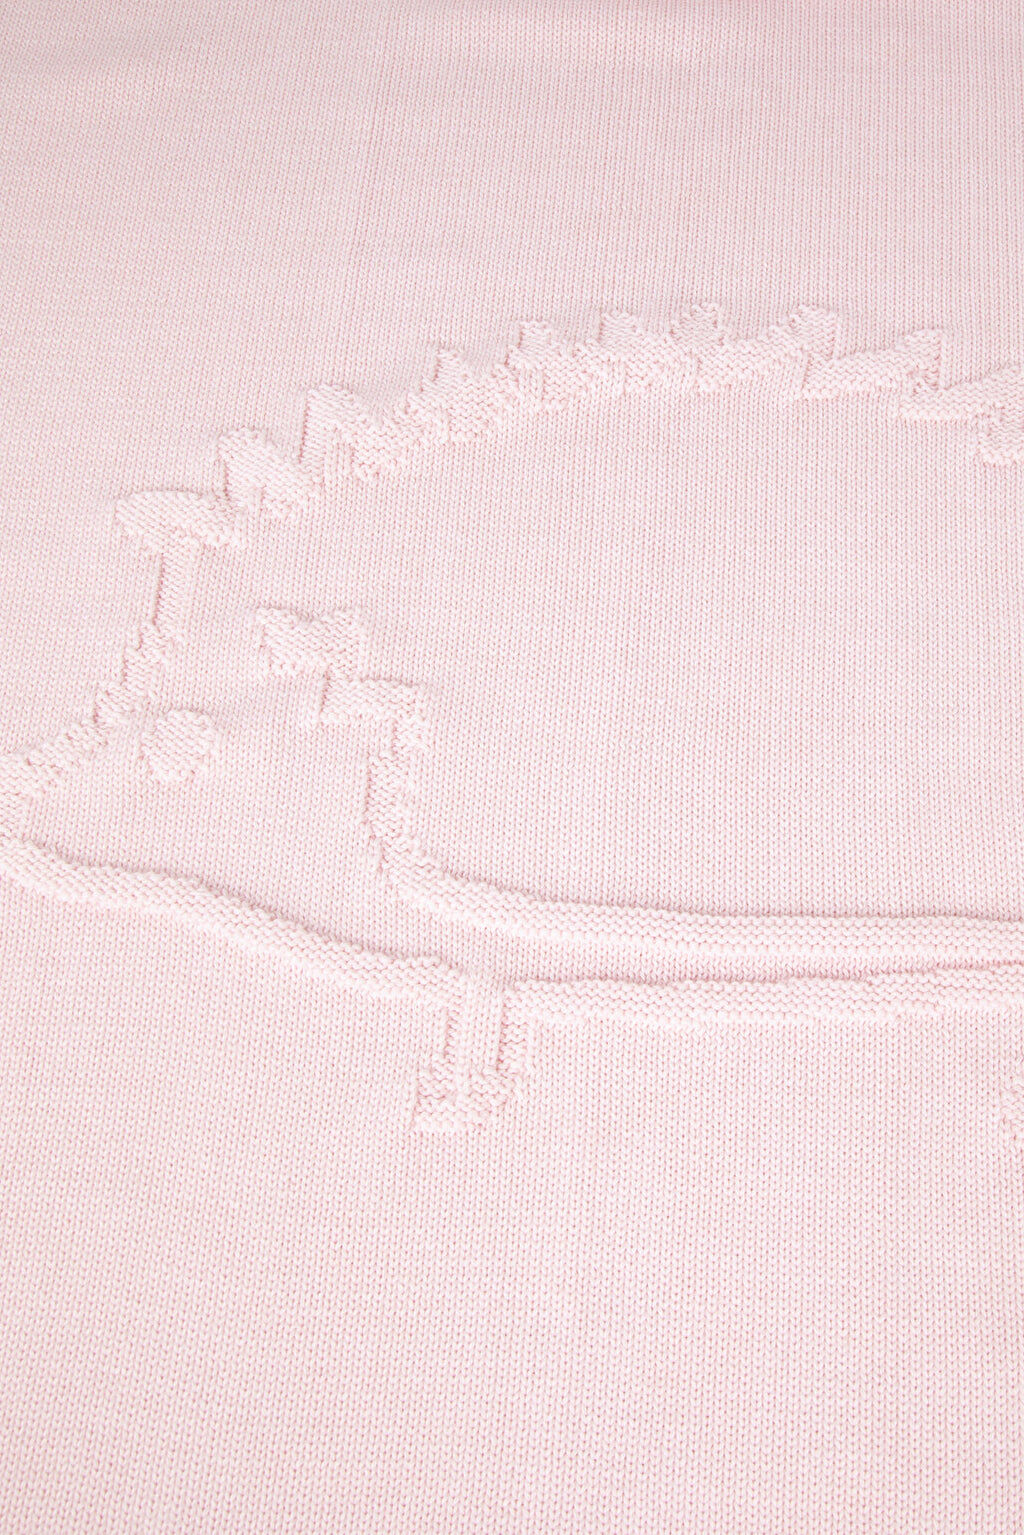 Blanket Wool - Hedgehog Pale pink